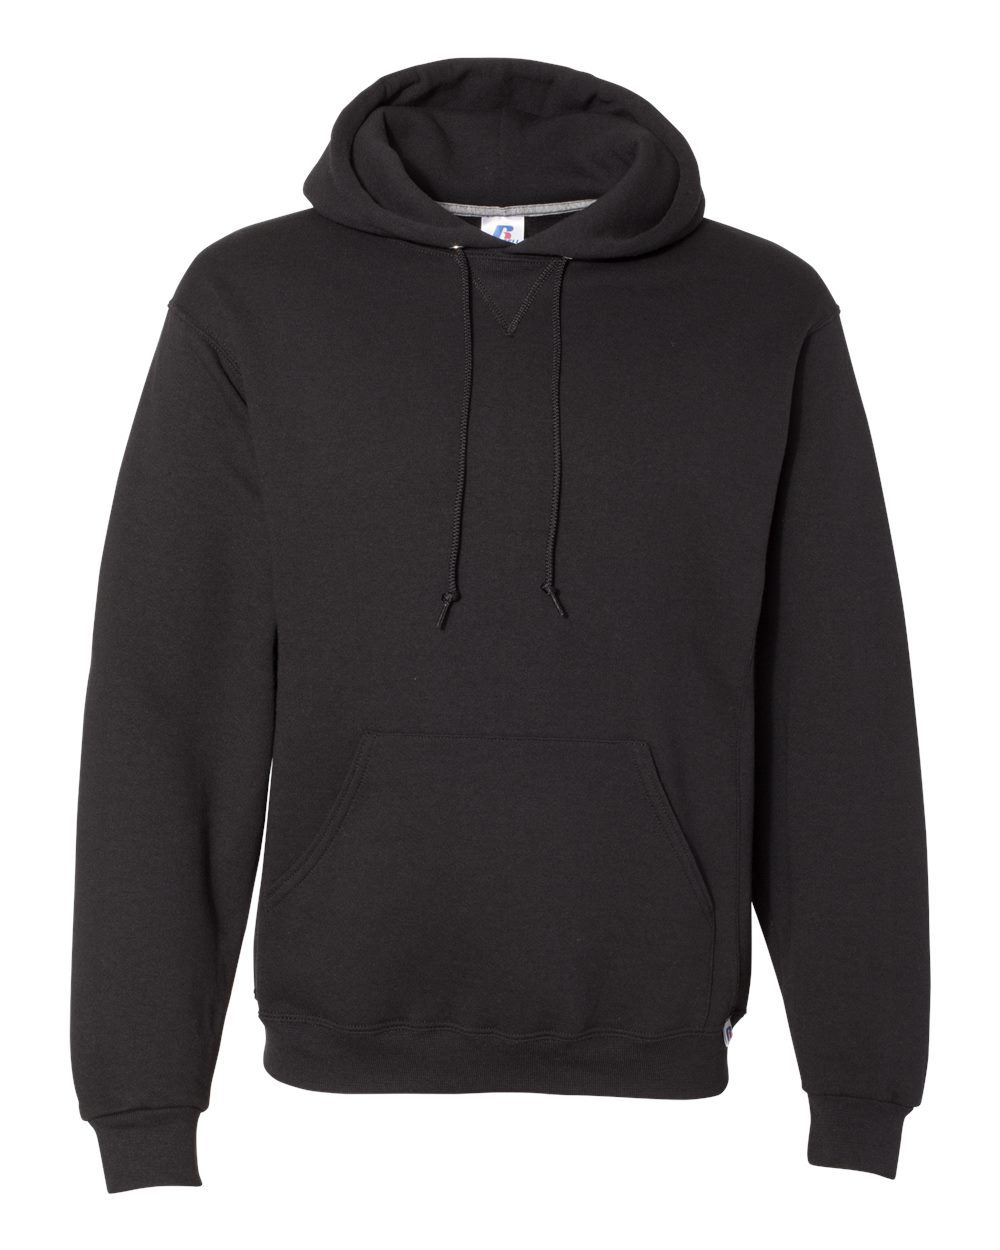 Augusta Sportswear Unisex-Adult Wicking Fleece Hooded Sweatshirt